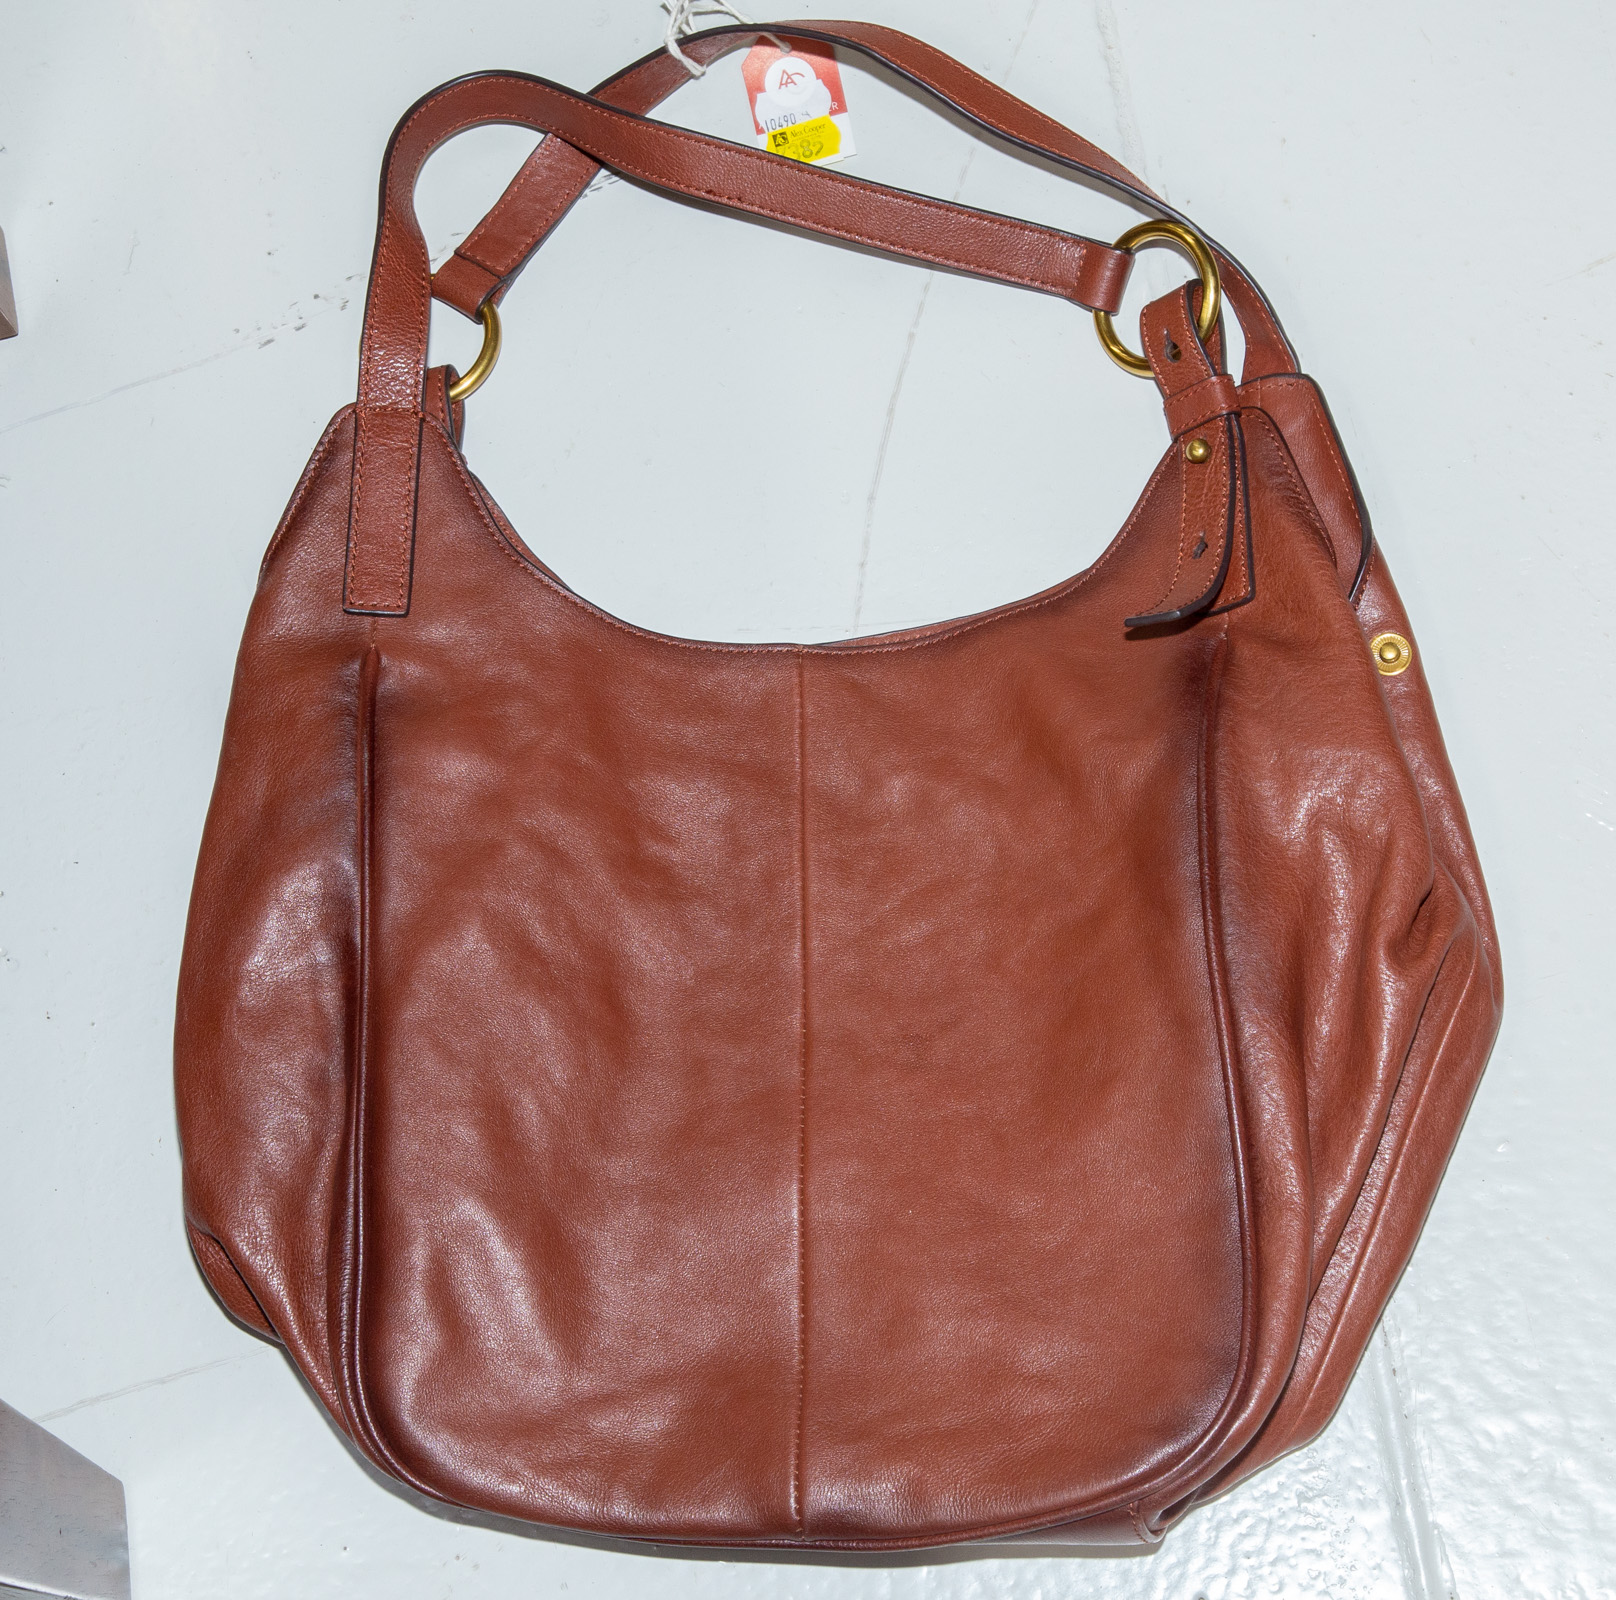 A FRYE SHOULDER BAG A brown leather 28970c